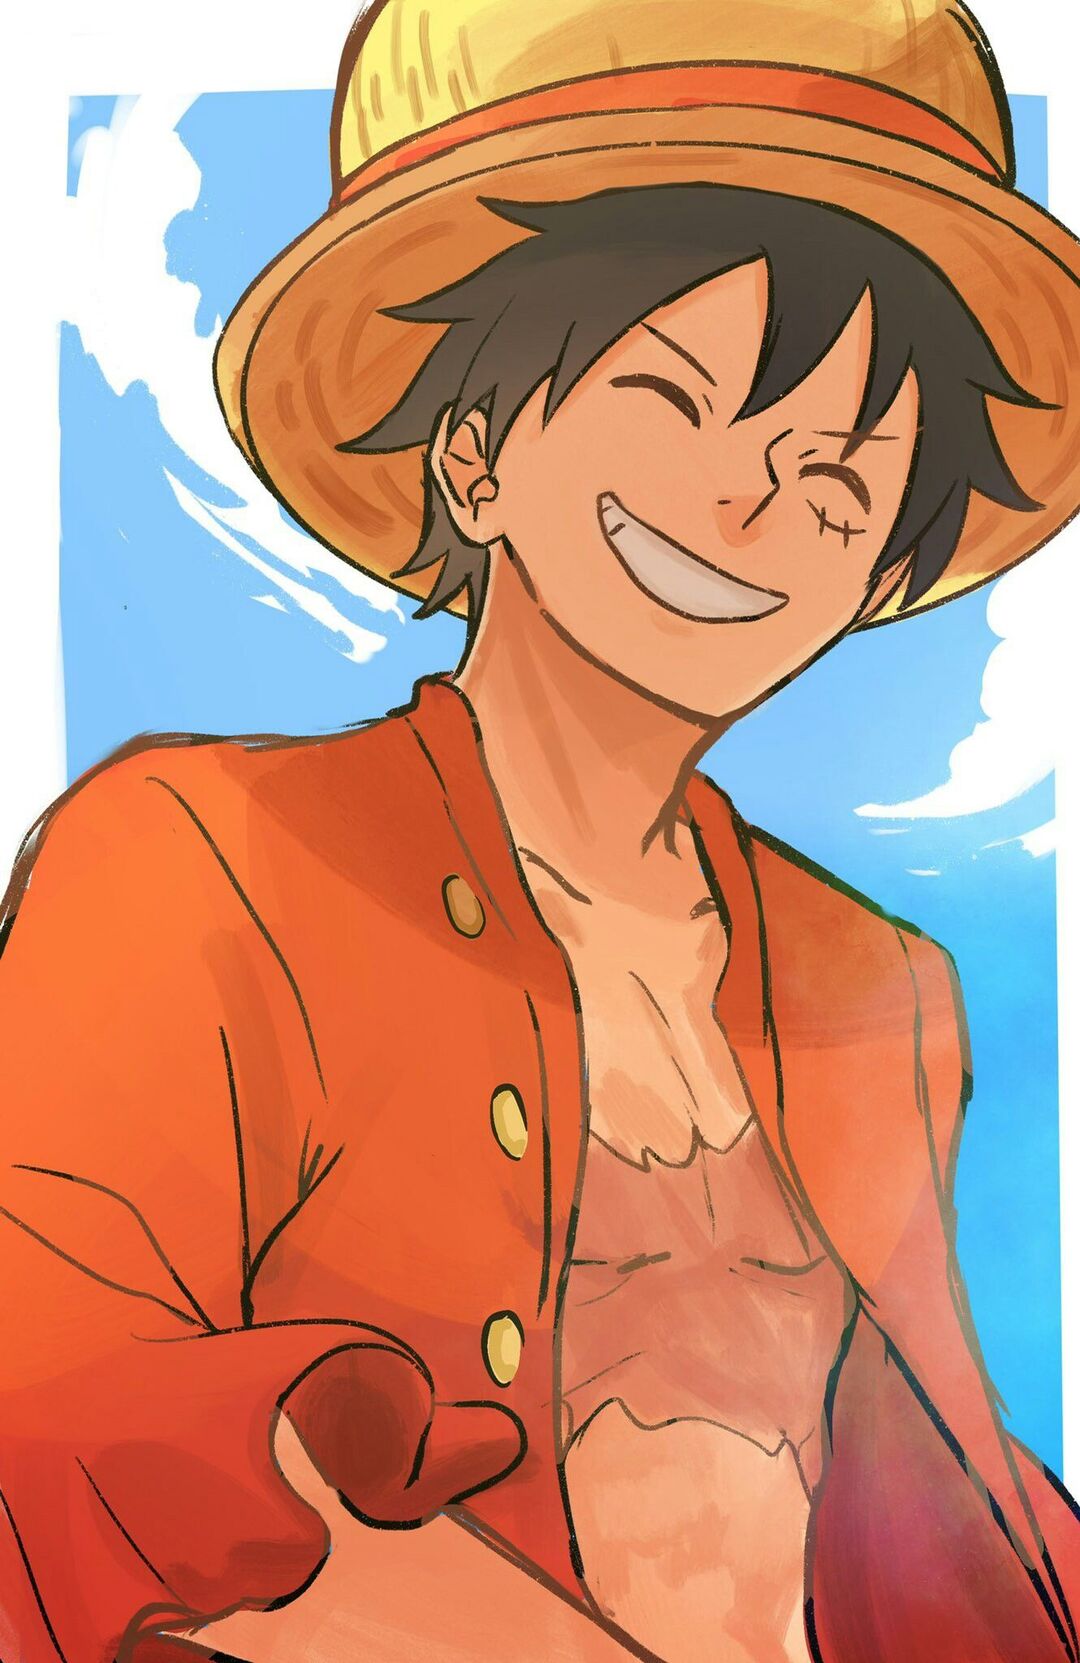 Chế độ hành nghề bá đạo và sức mạnh vô song khiến cho Luffy trở thành một trong những nhân vật anime được yêu thích nhất, nhất là trong cộng đồng fan hâm mộ của One Piece. Hãy tham quan ngay hình ảnh Luffy Bá Đạo, để truyền cảm hứng và sự thích thú đến với bạn.